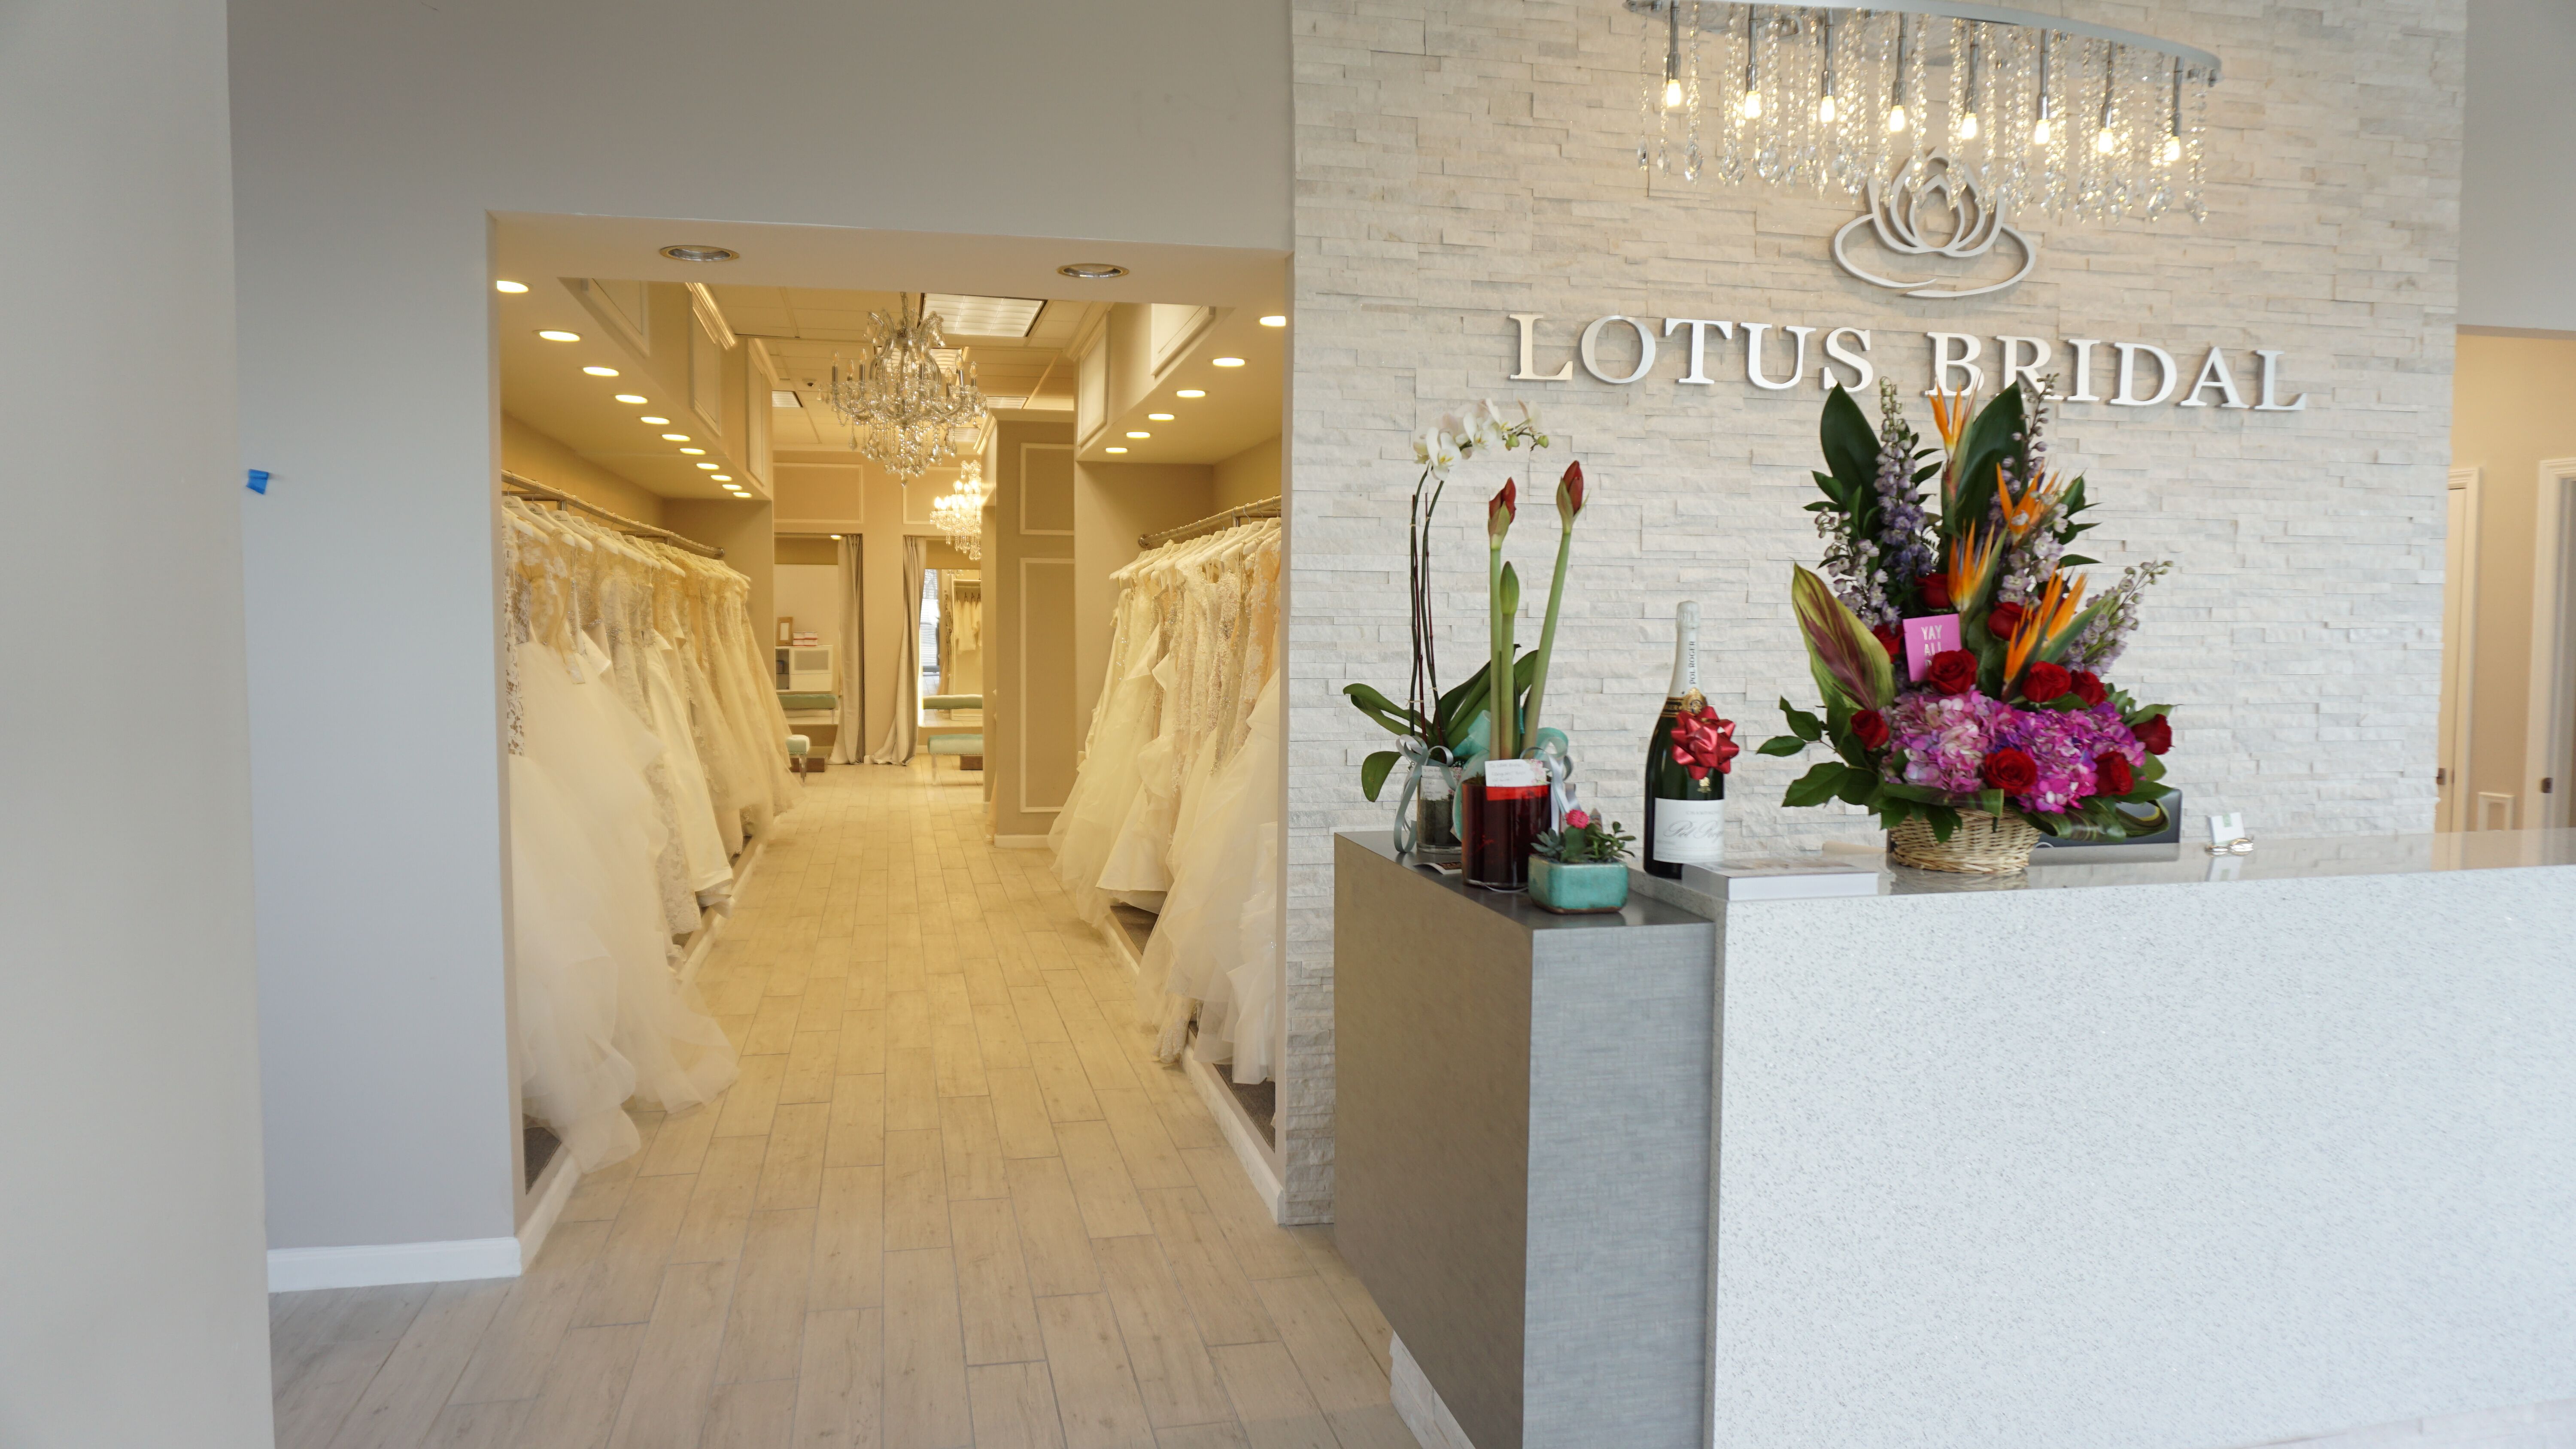 lotus bridal prices